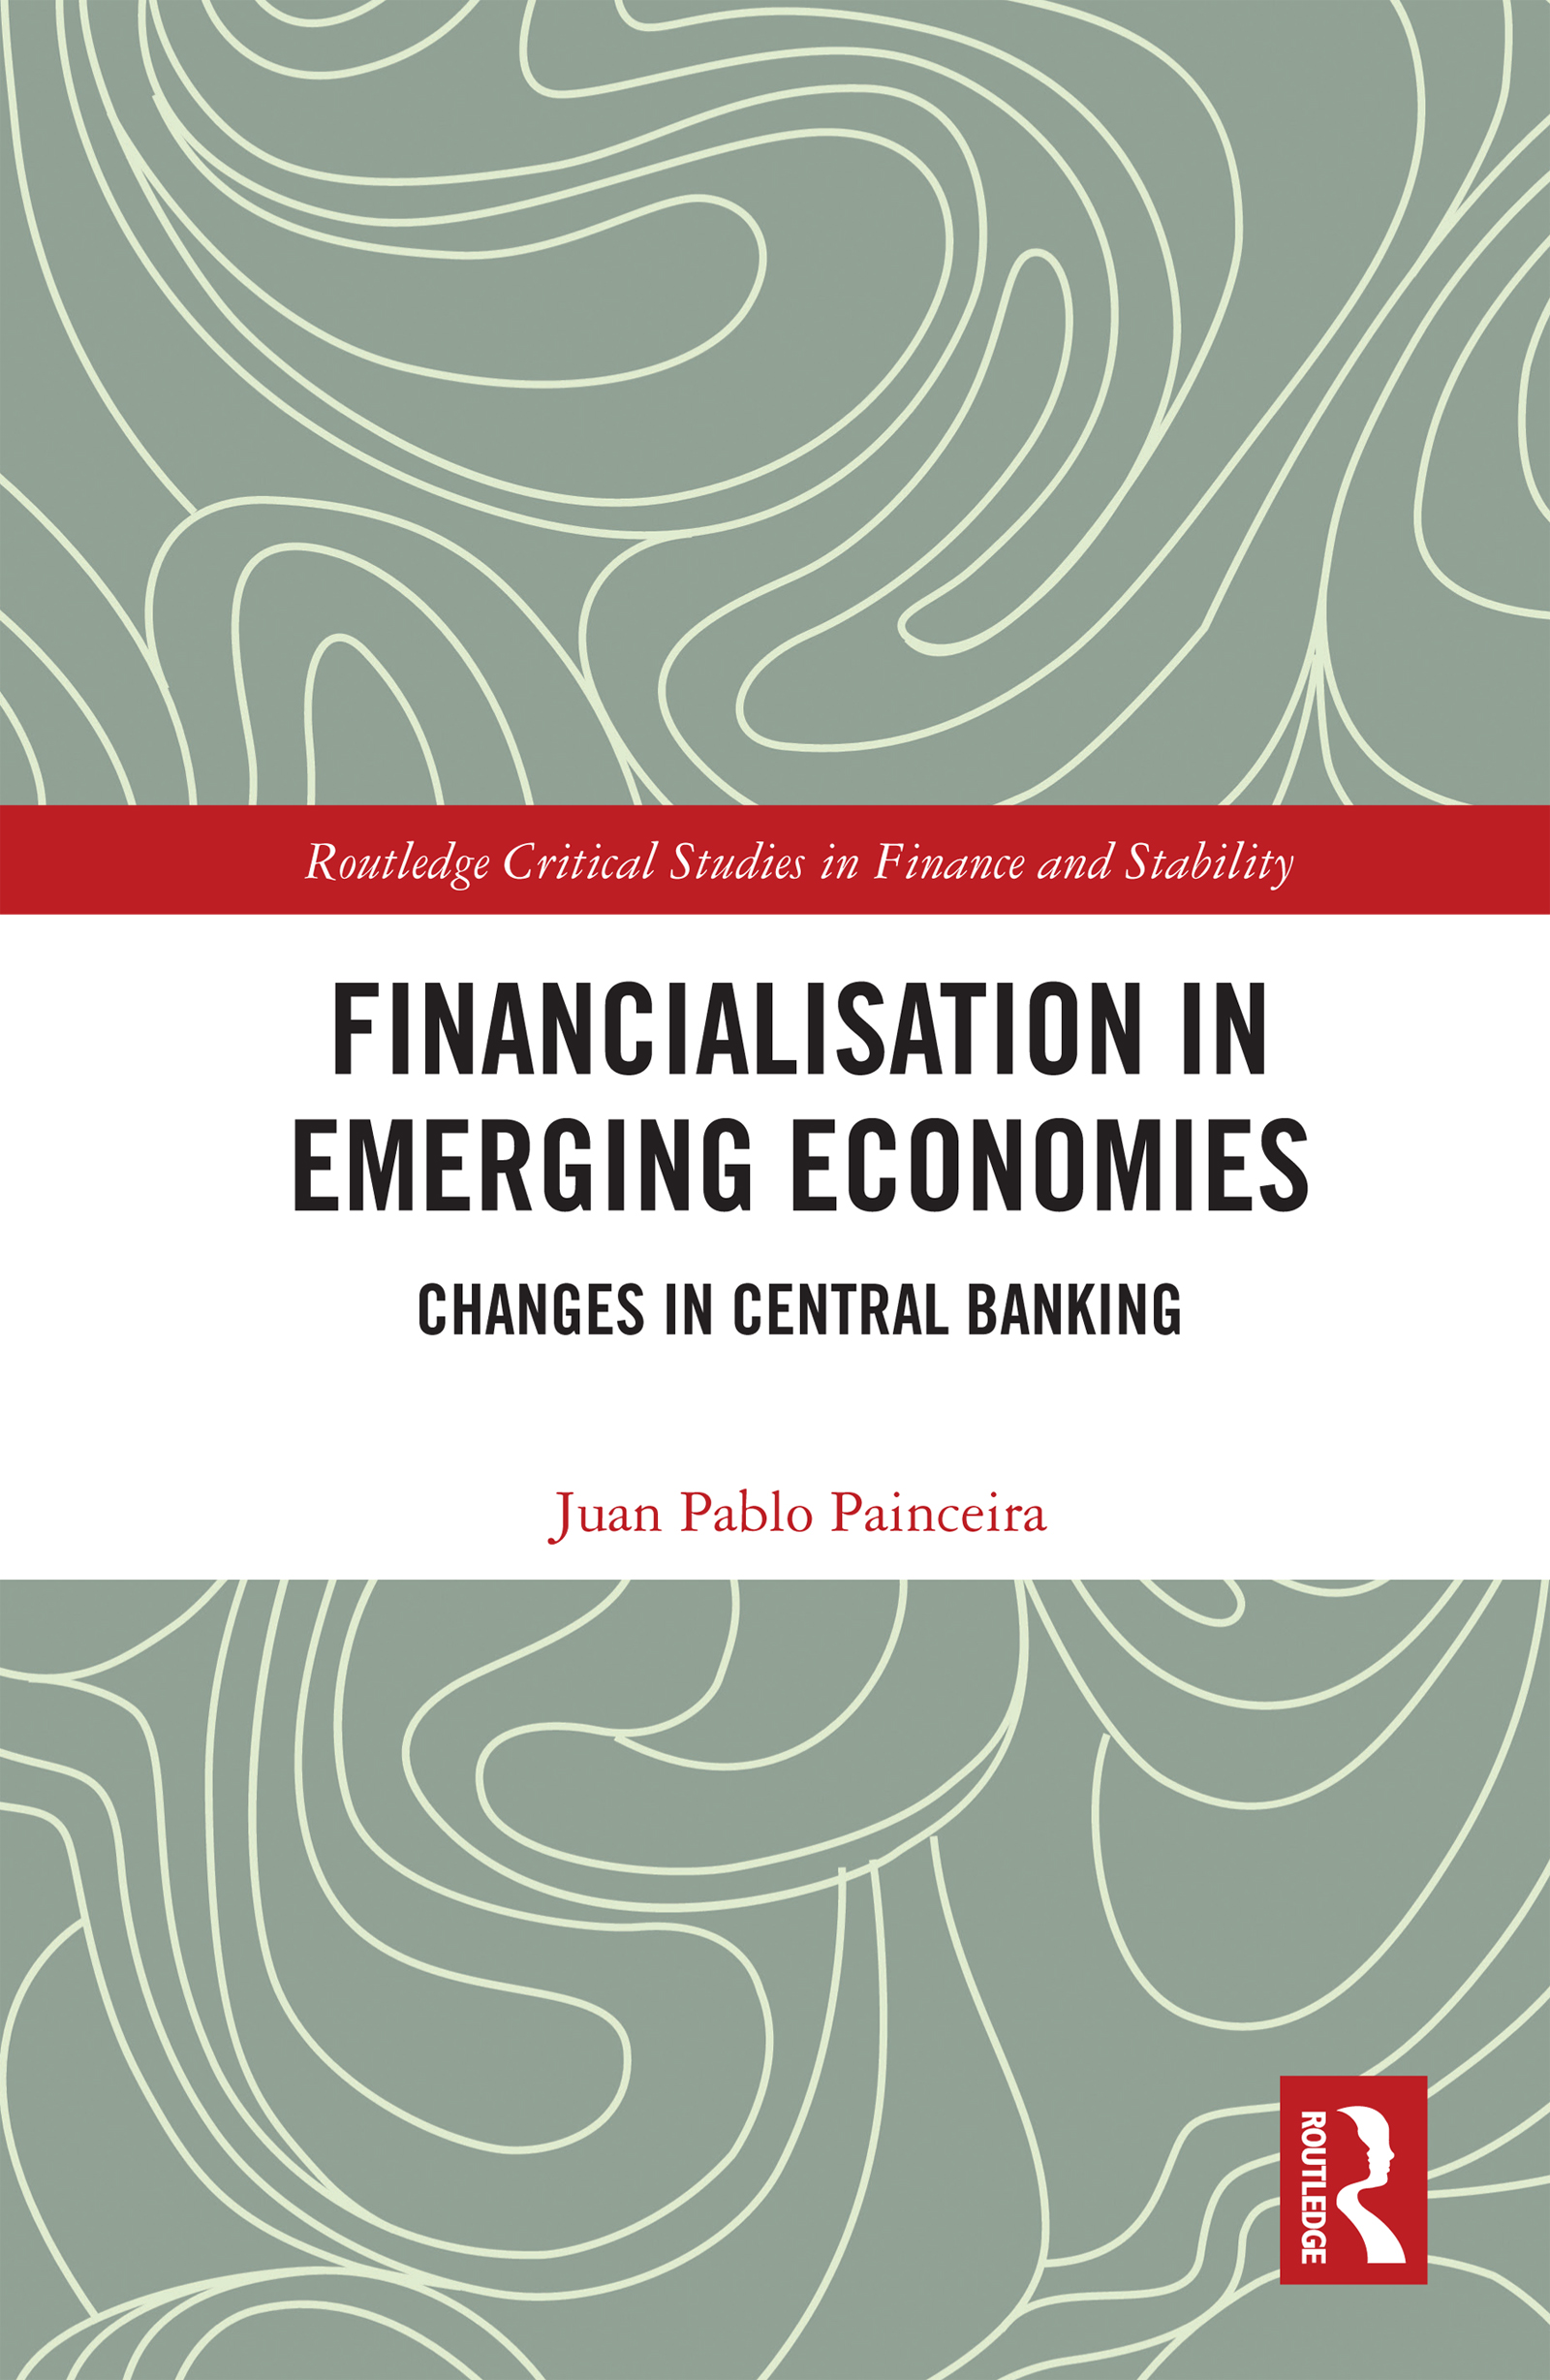 Financialisation in Emerging Economies